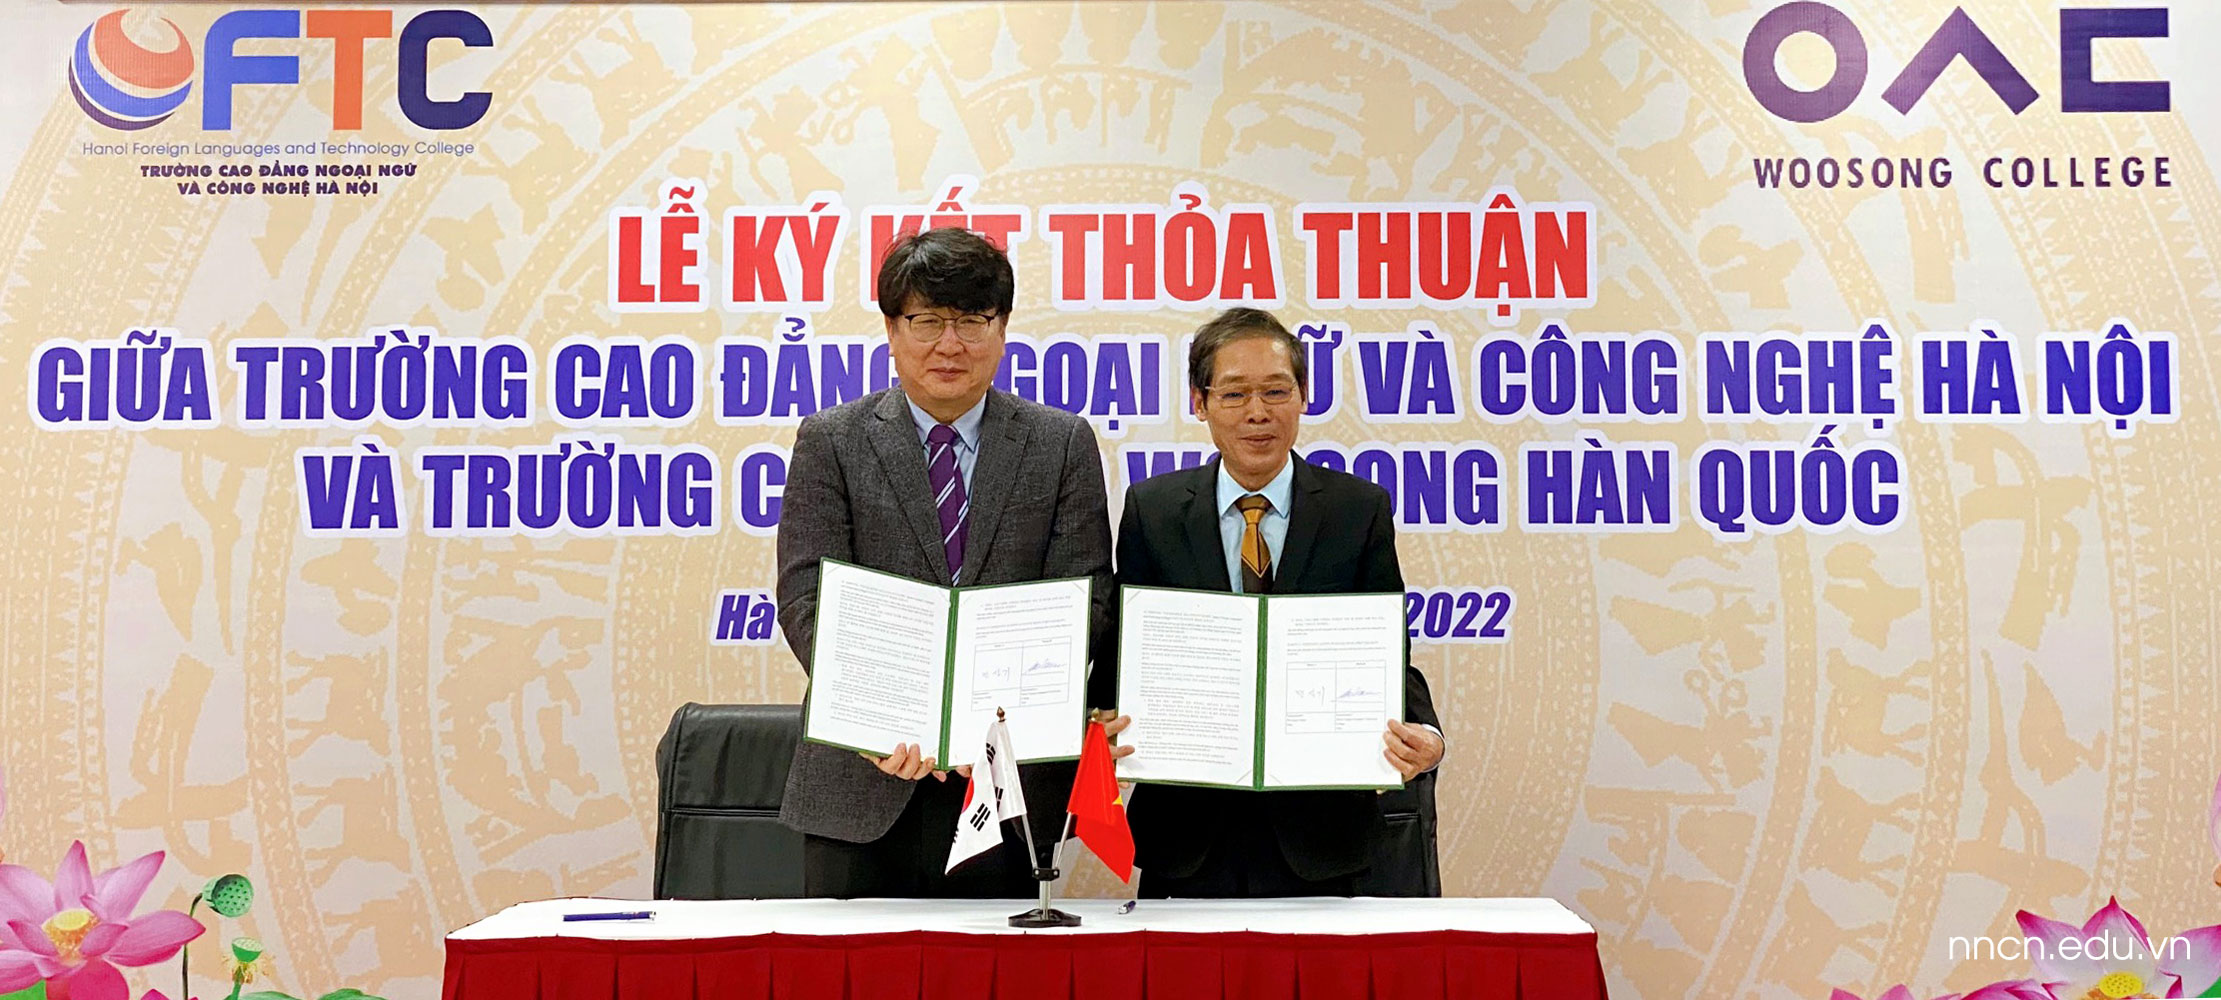 Trường Cao đẳng Ngoại ngữ và Công nghệ Hà Nội ký kết hợp tác với Trường Cao đẳng Woosong (Hàn Quốc)